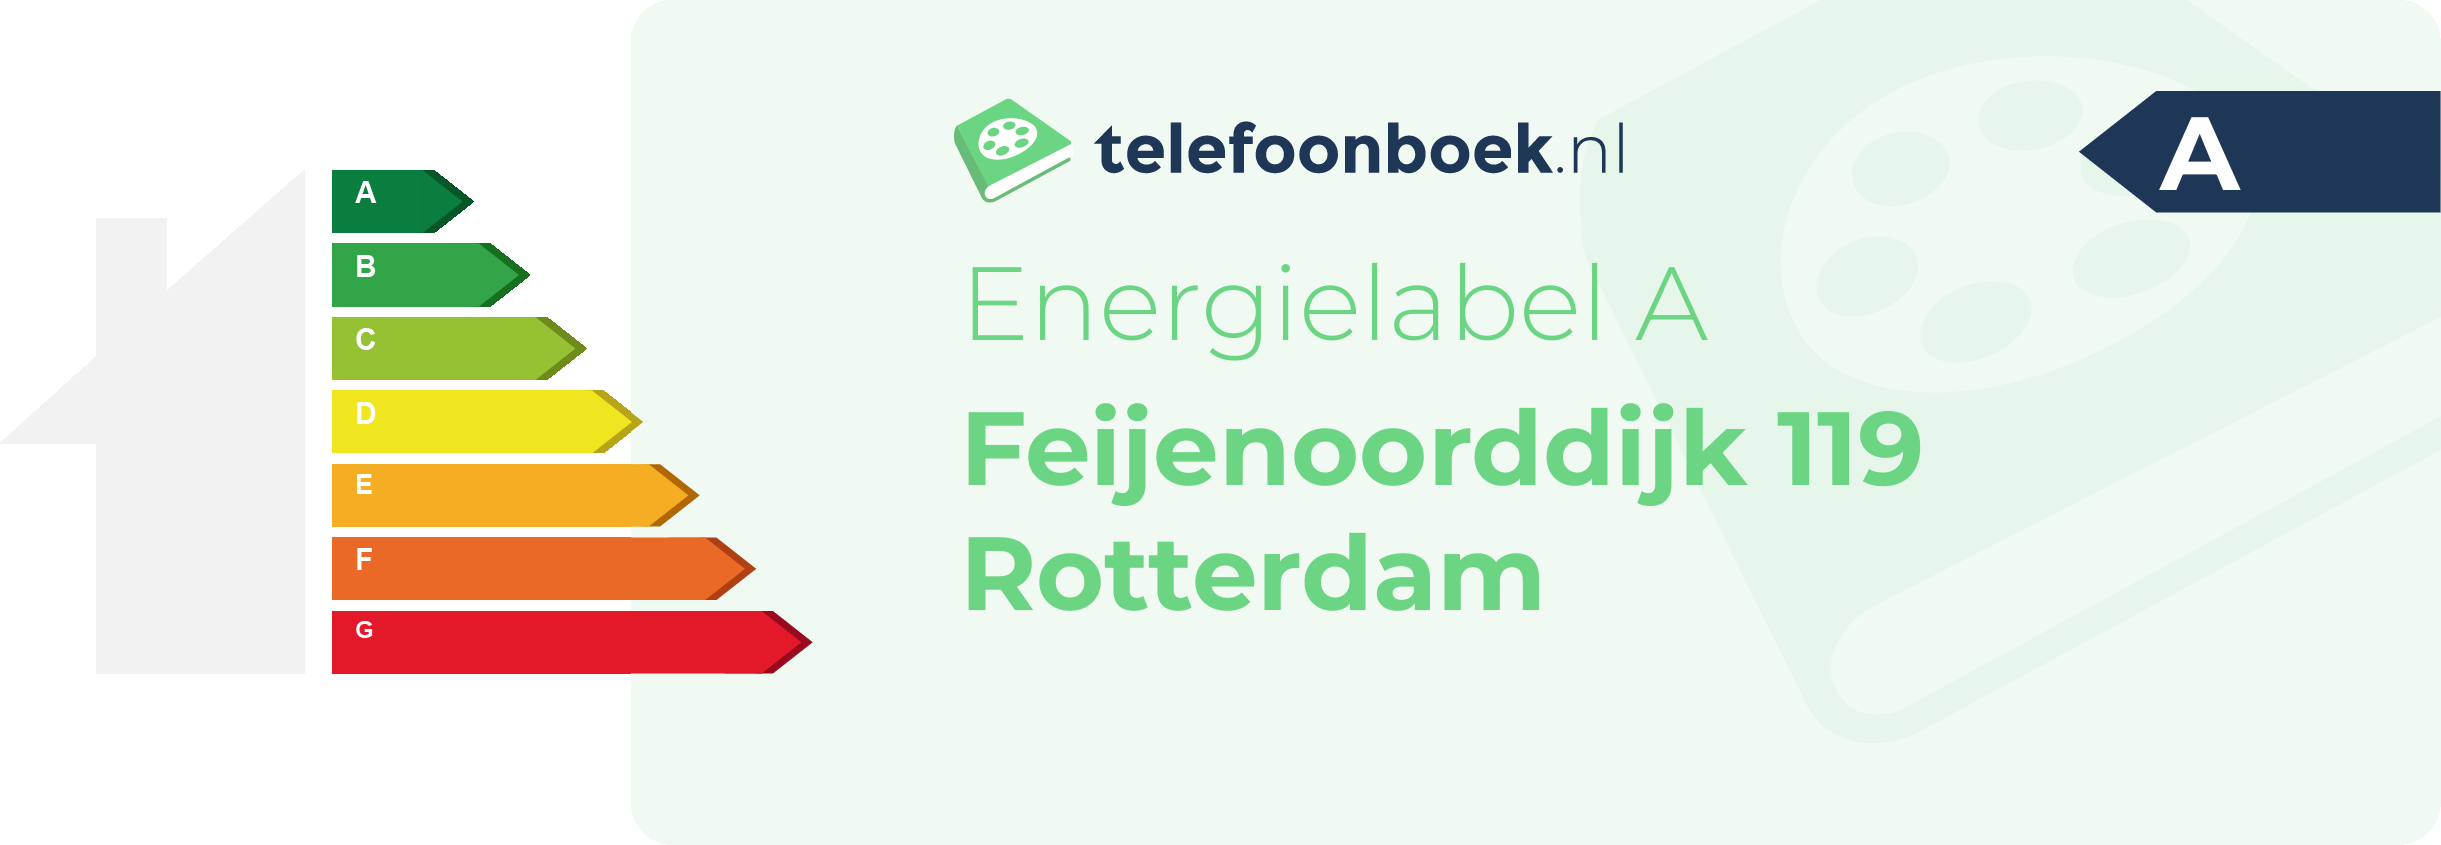 Energielabel Feijenoorddijk 119 Rotterdam